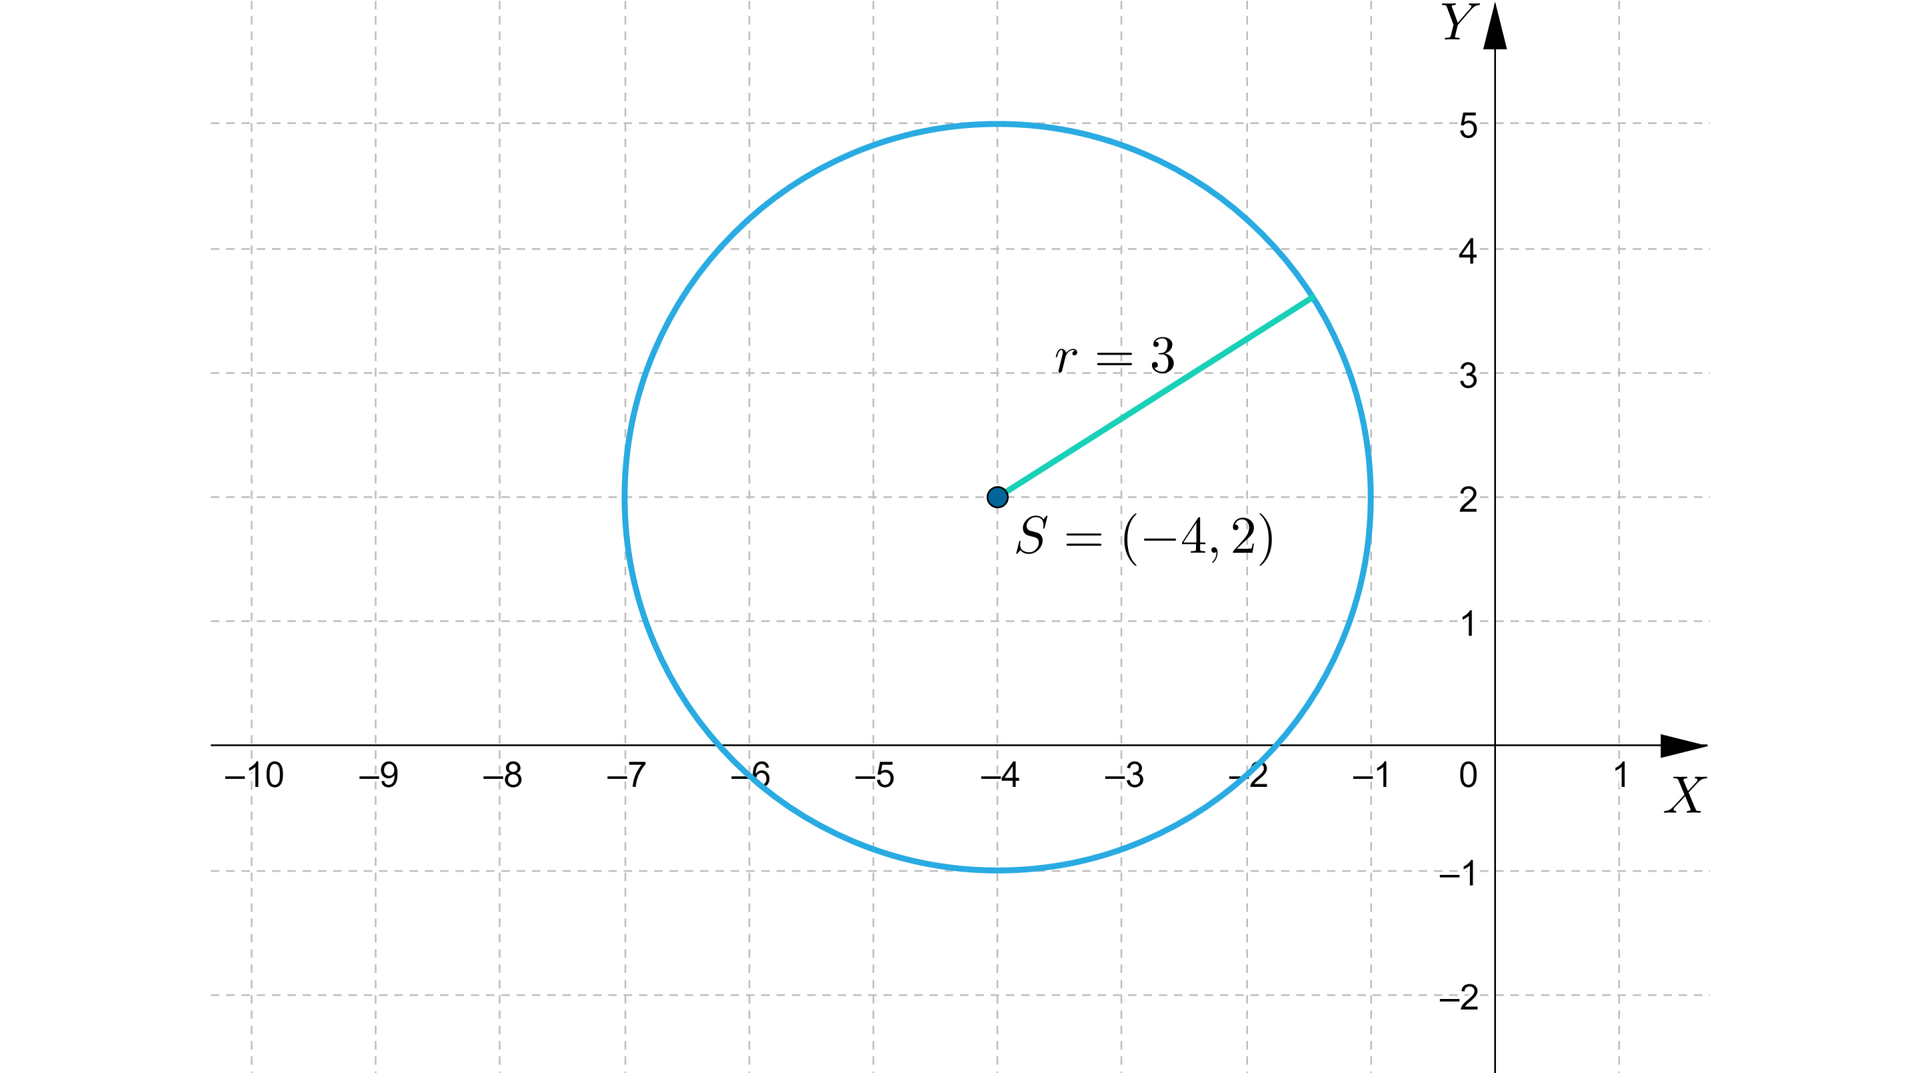 Ilustracja przedstawia układ współrzędnych z poziomą osią X od minus dziesięciu do jeden oraz z pionową osią Y od minus dwóch do pięciu. Na płaszczyźnie narysowano okrąg o środku w punkcie S=-4,2 i o promieniu r równym trzy.